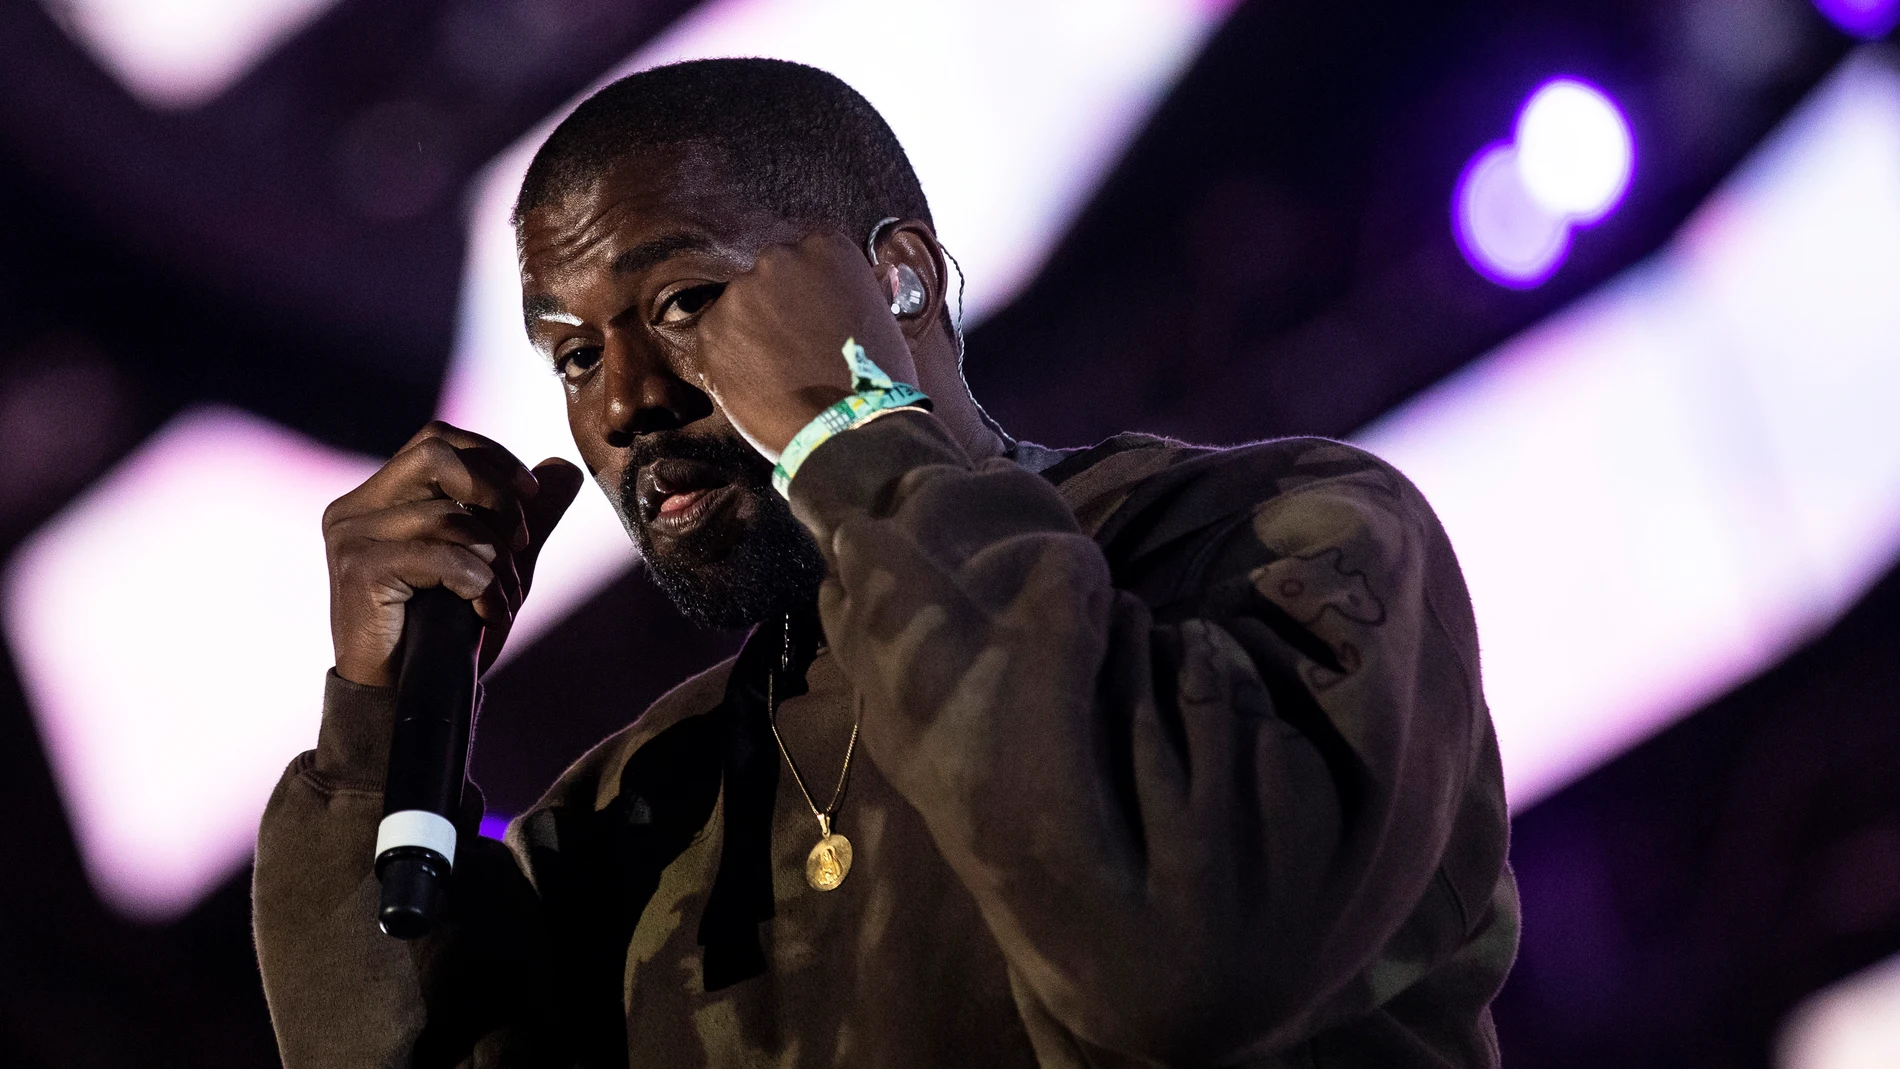 El rapero Kanye West, en una fotografía de archivo.